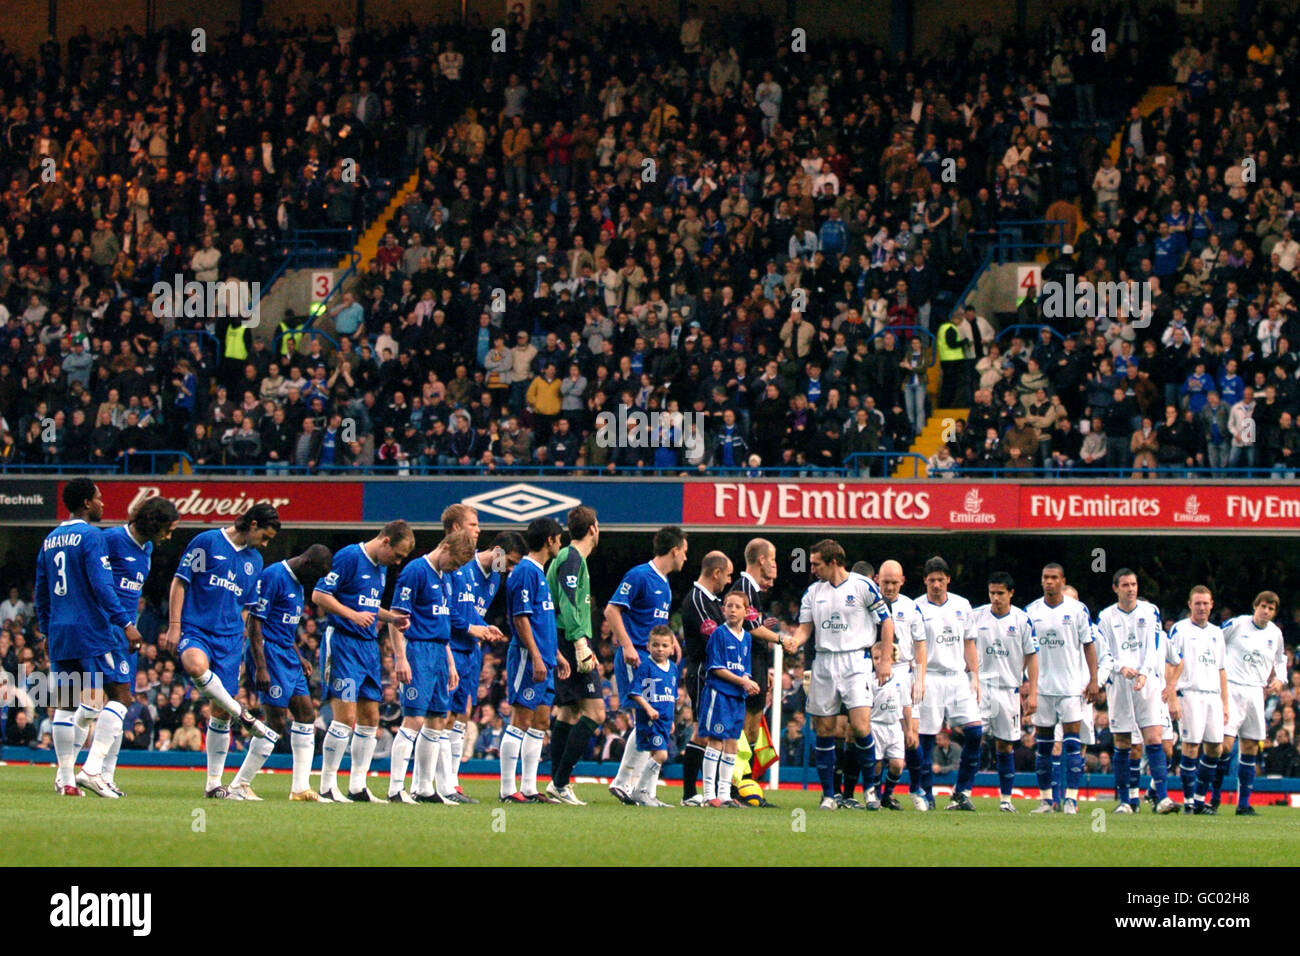 Soccer - FA Barclays Premiership - Chelsea / Everton. Les équipes de Chelsea et d'Everton se mettent en file d'attente avant le match Banque D'Images